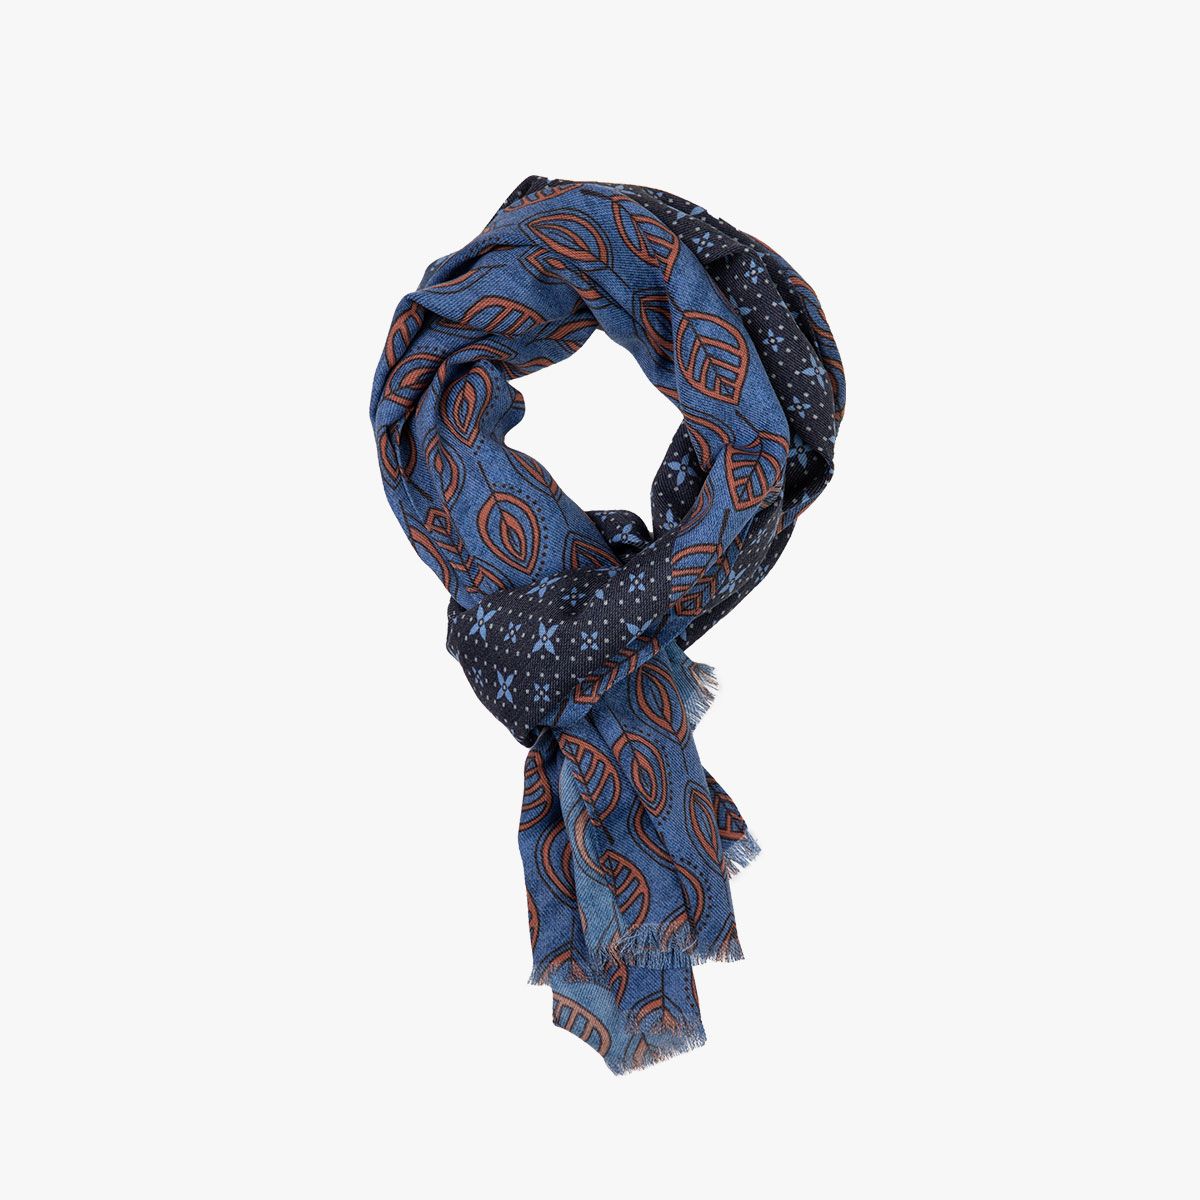 Gemusterter Schal mit Blätter-Design in blau